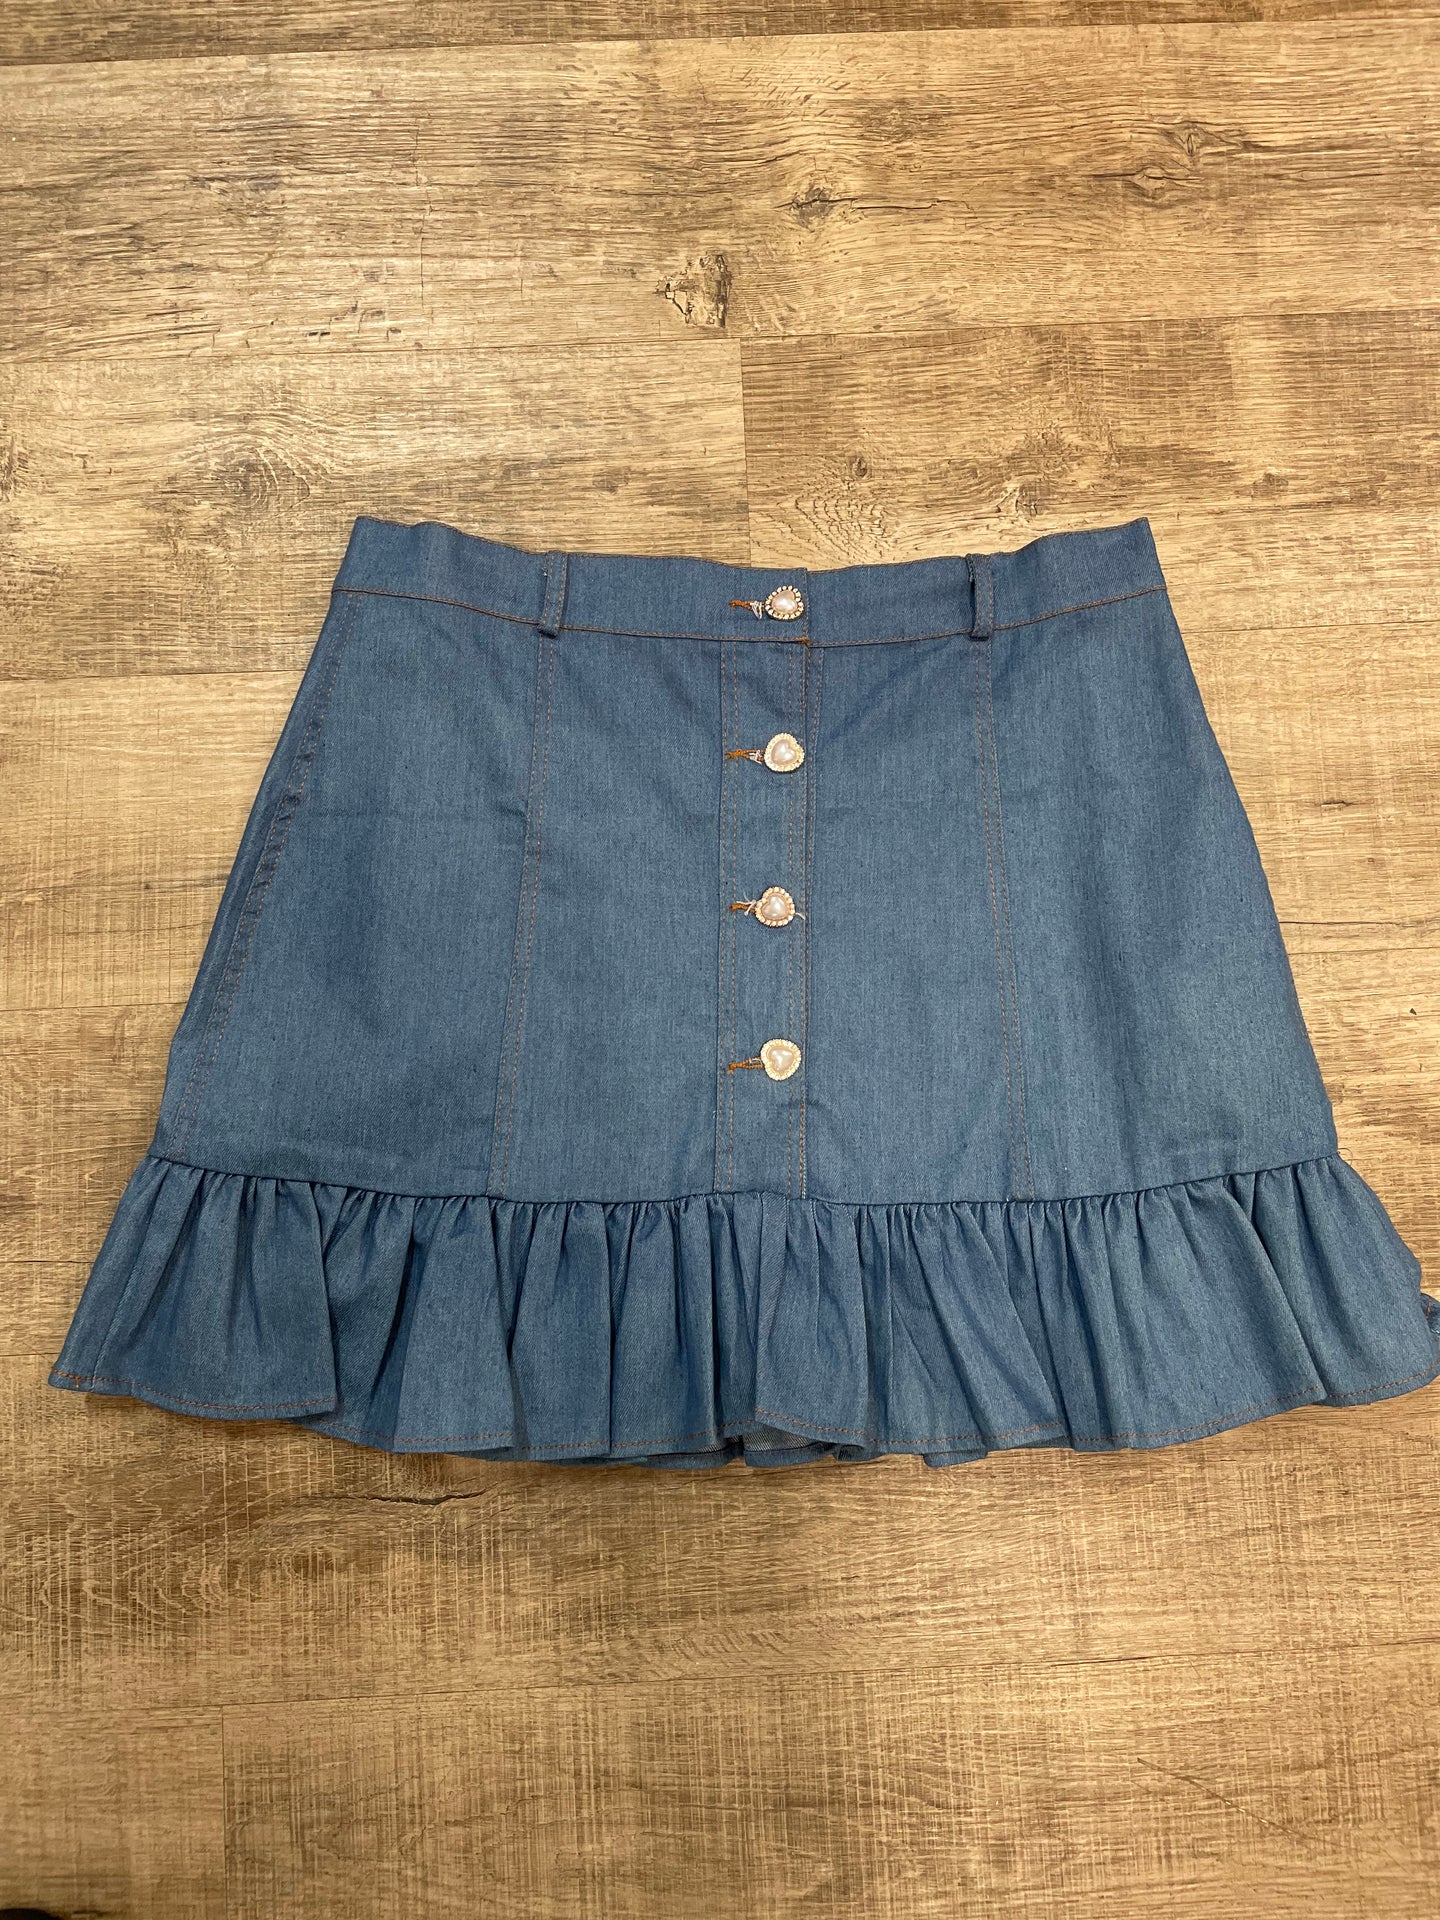 Ms. Cutie Skirt Set- Denim (Skirt Only)